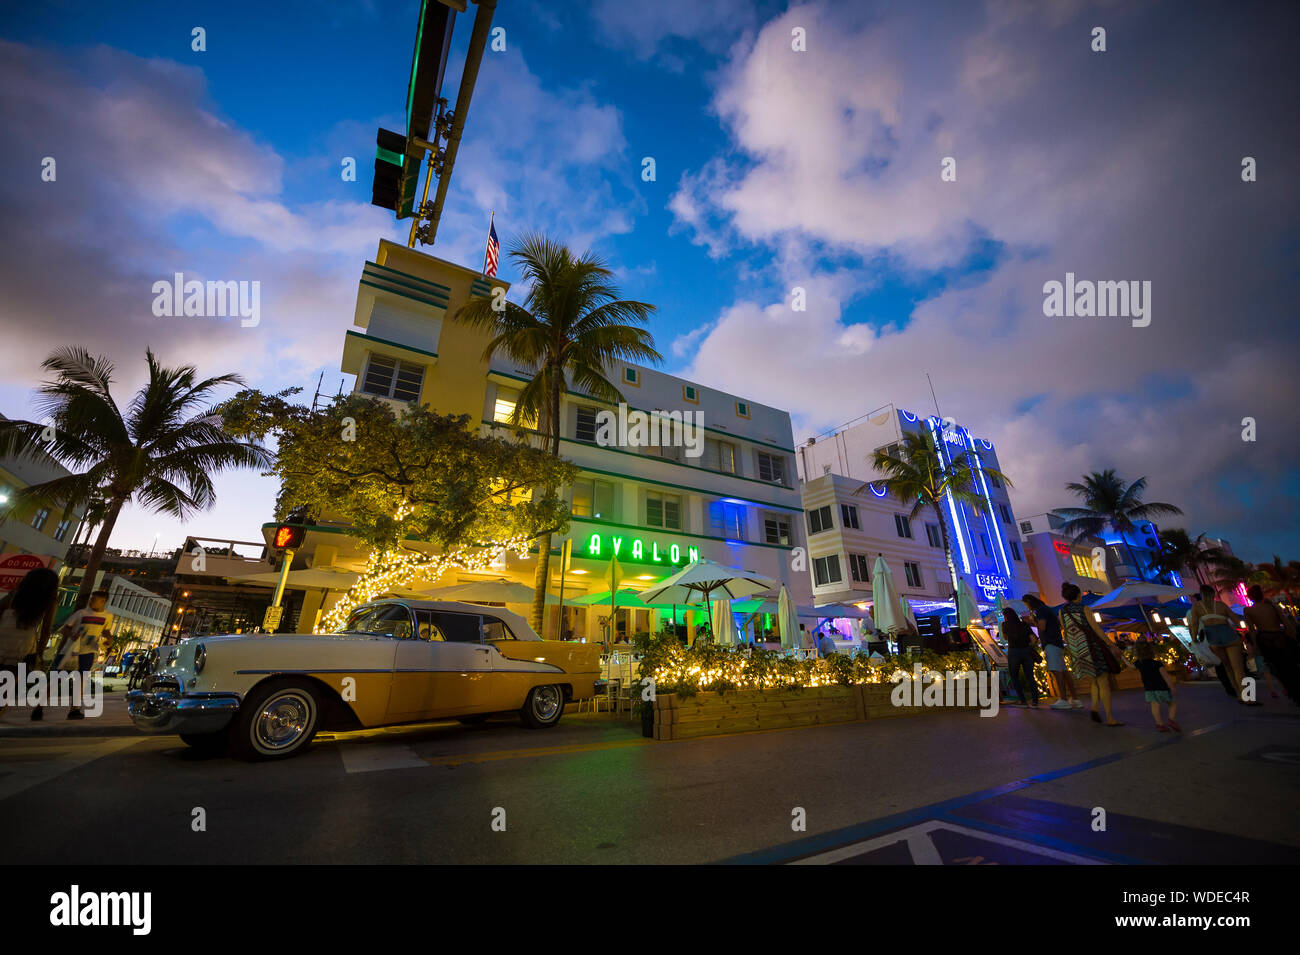 MIAMI - Januar 08, 2018: Neon Lichter schmücken die Art Deco Architektur hinter einer klassischen amerikanischen Auto am Ocean Drive in South Beach geparkt. Stockfoto